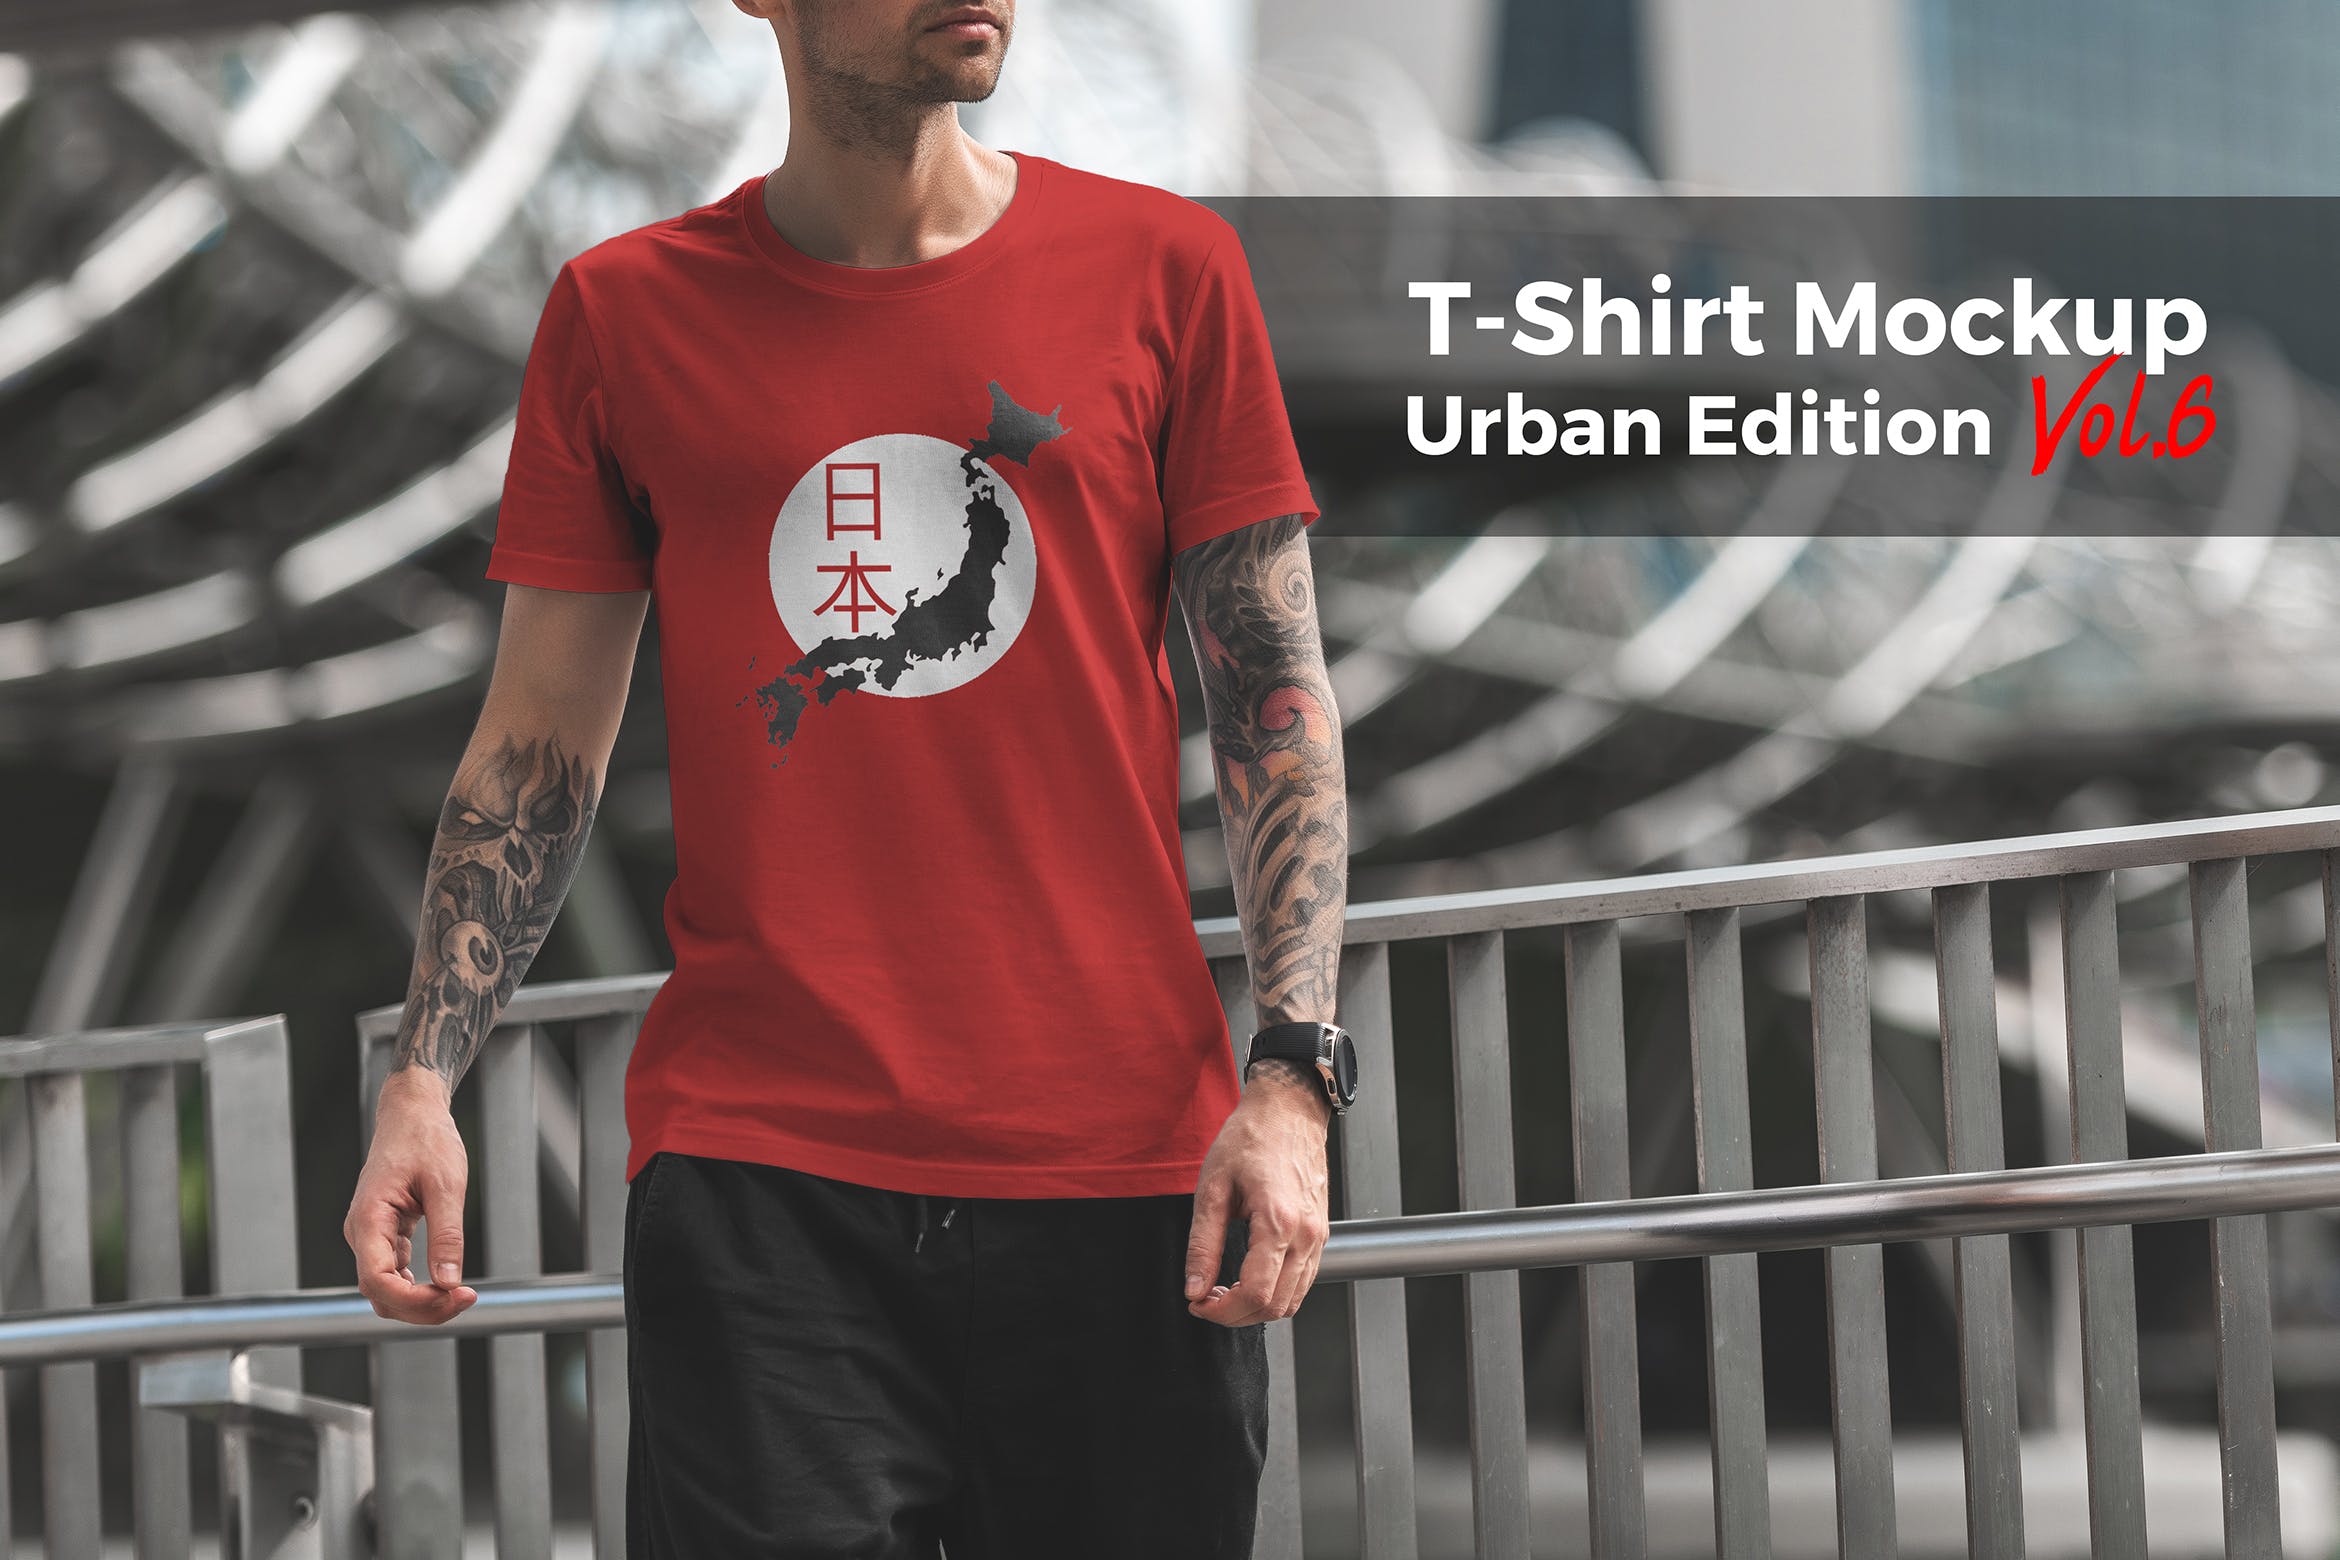 城市系列-印花T恤产品展示样机第一素材精选模板v6 T-Shirt Mockup Urban Edition Vol. 6插图